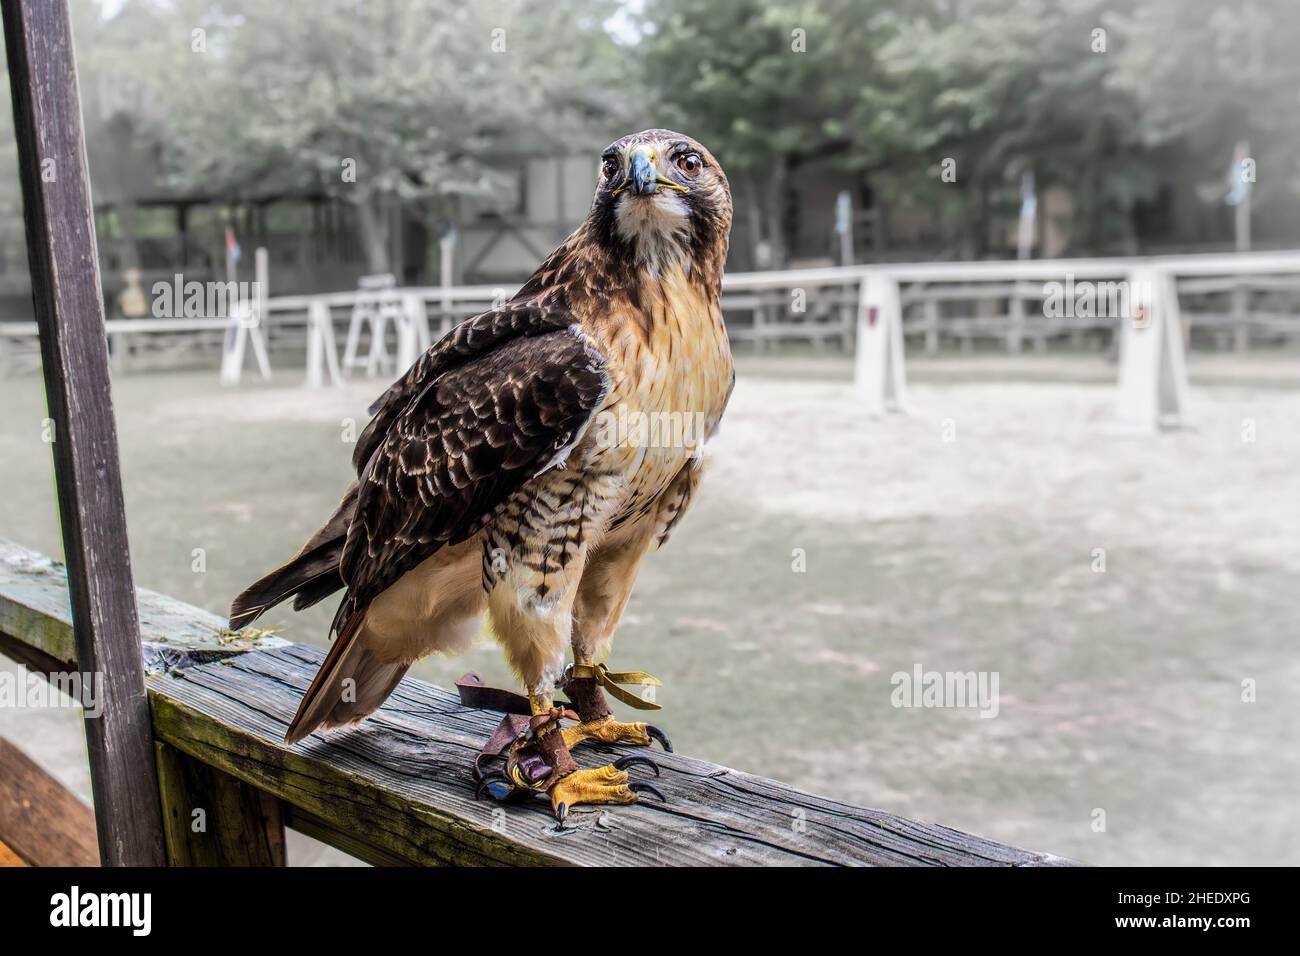 Oiseaux de proie ou rapaces - Hawk formé à Falconry se trouve d'une clôture en bois rustique avec des bandes de cuir fort appelé jesses sur les deux jambes semble alerte. Banque D'Images